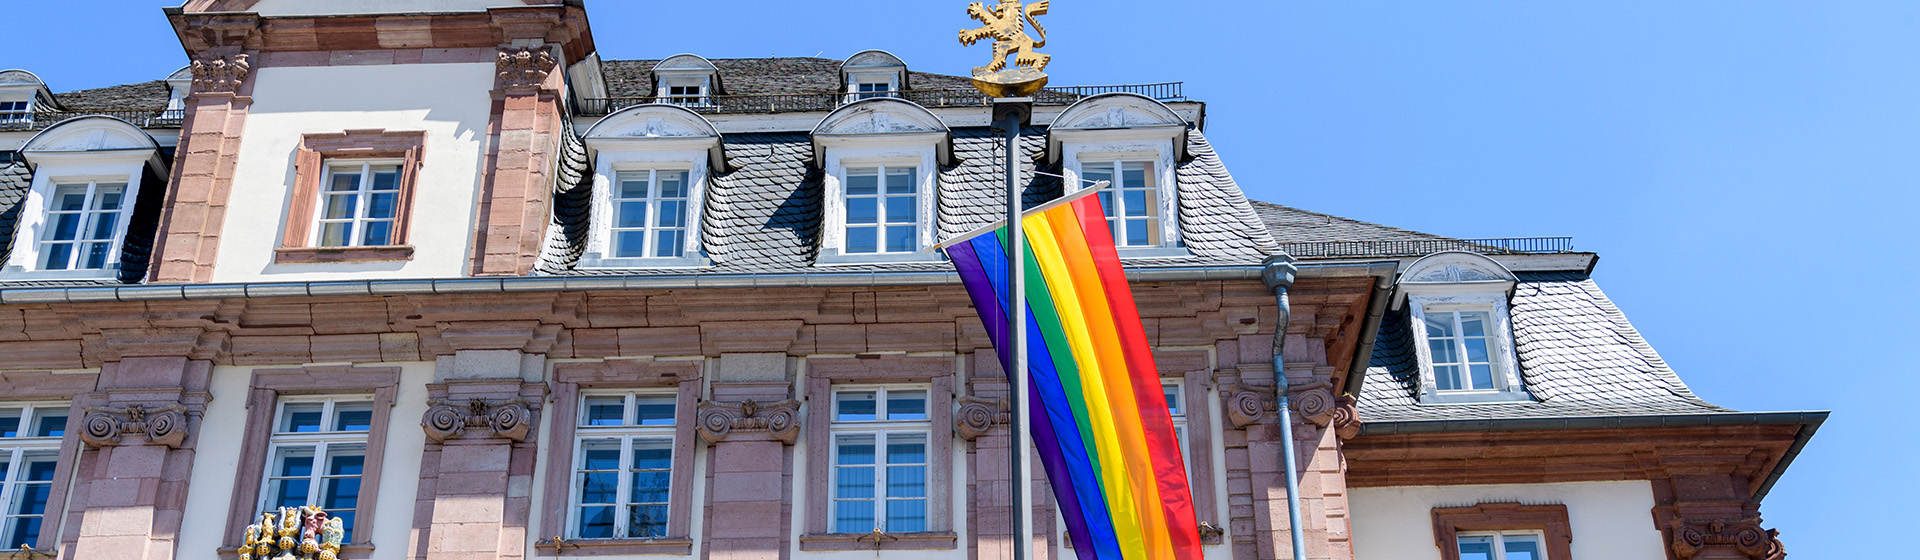 Regenbogenflagge vor Rathaus